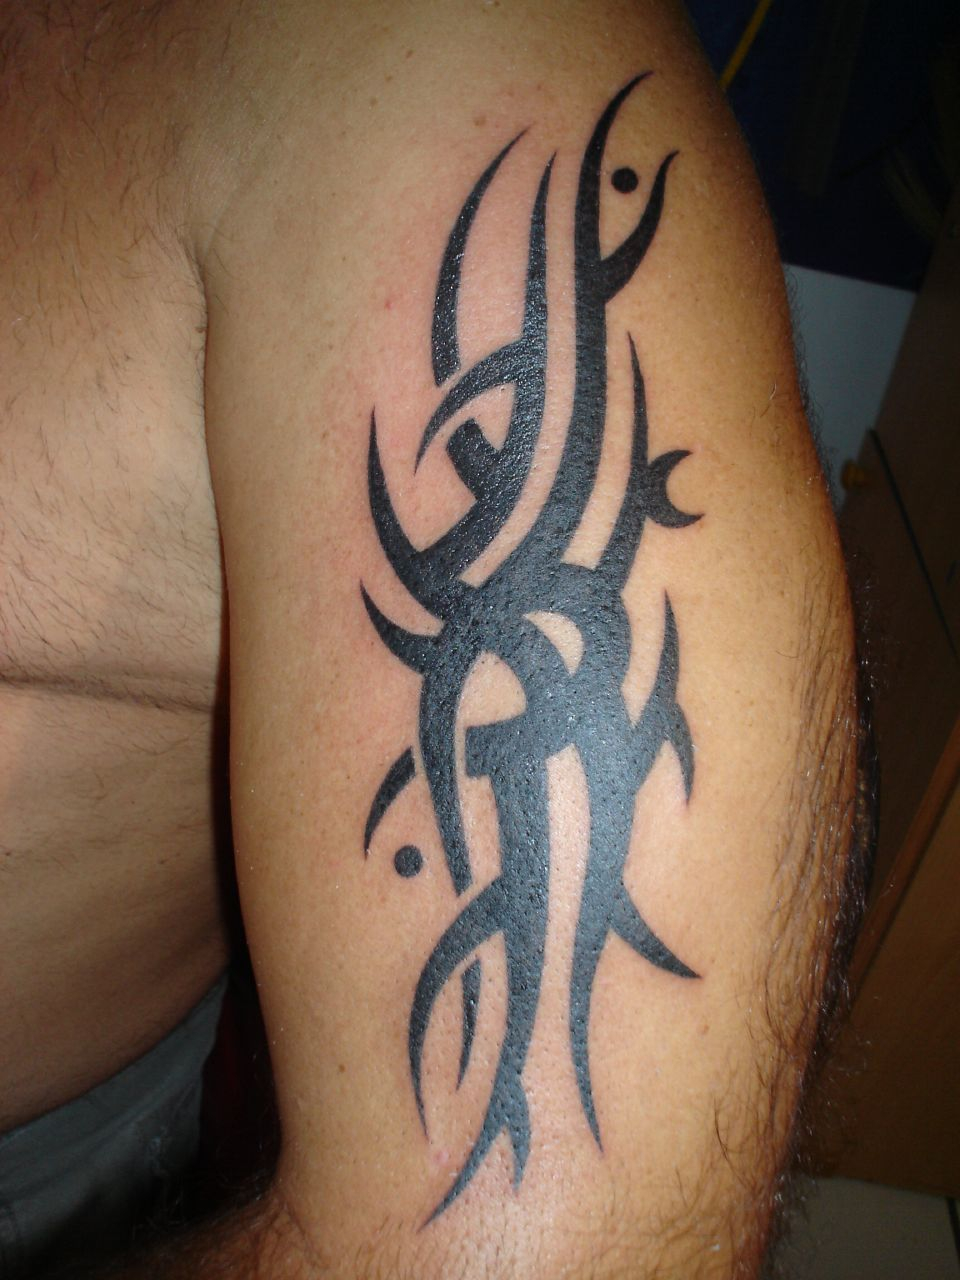 30 Best Tribal Tattoo Designs For Mens Arm Tattoo Ideas in dimensions 960 X 1280